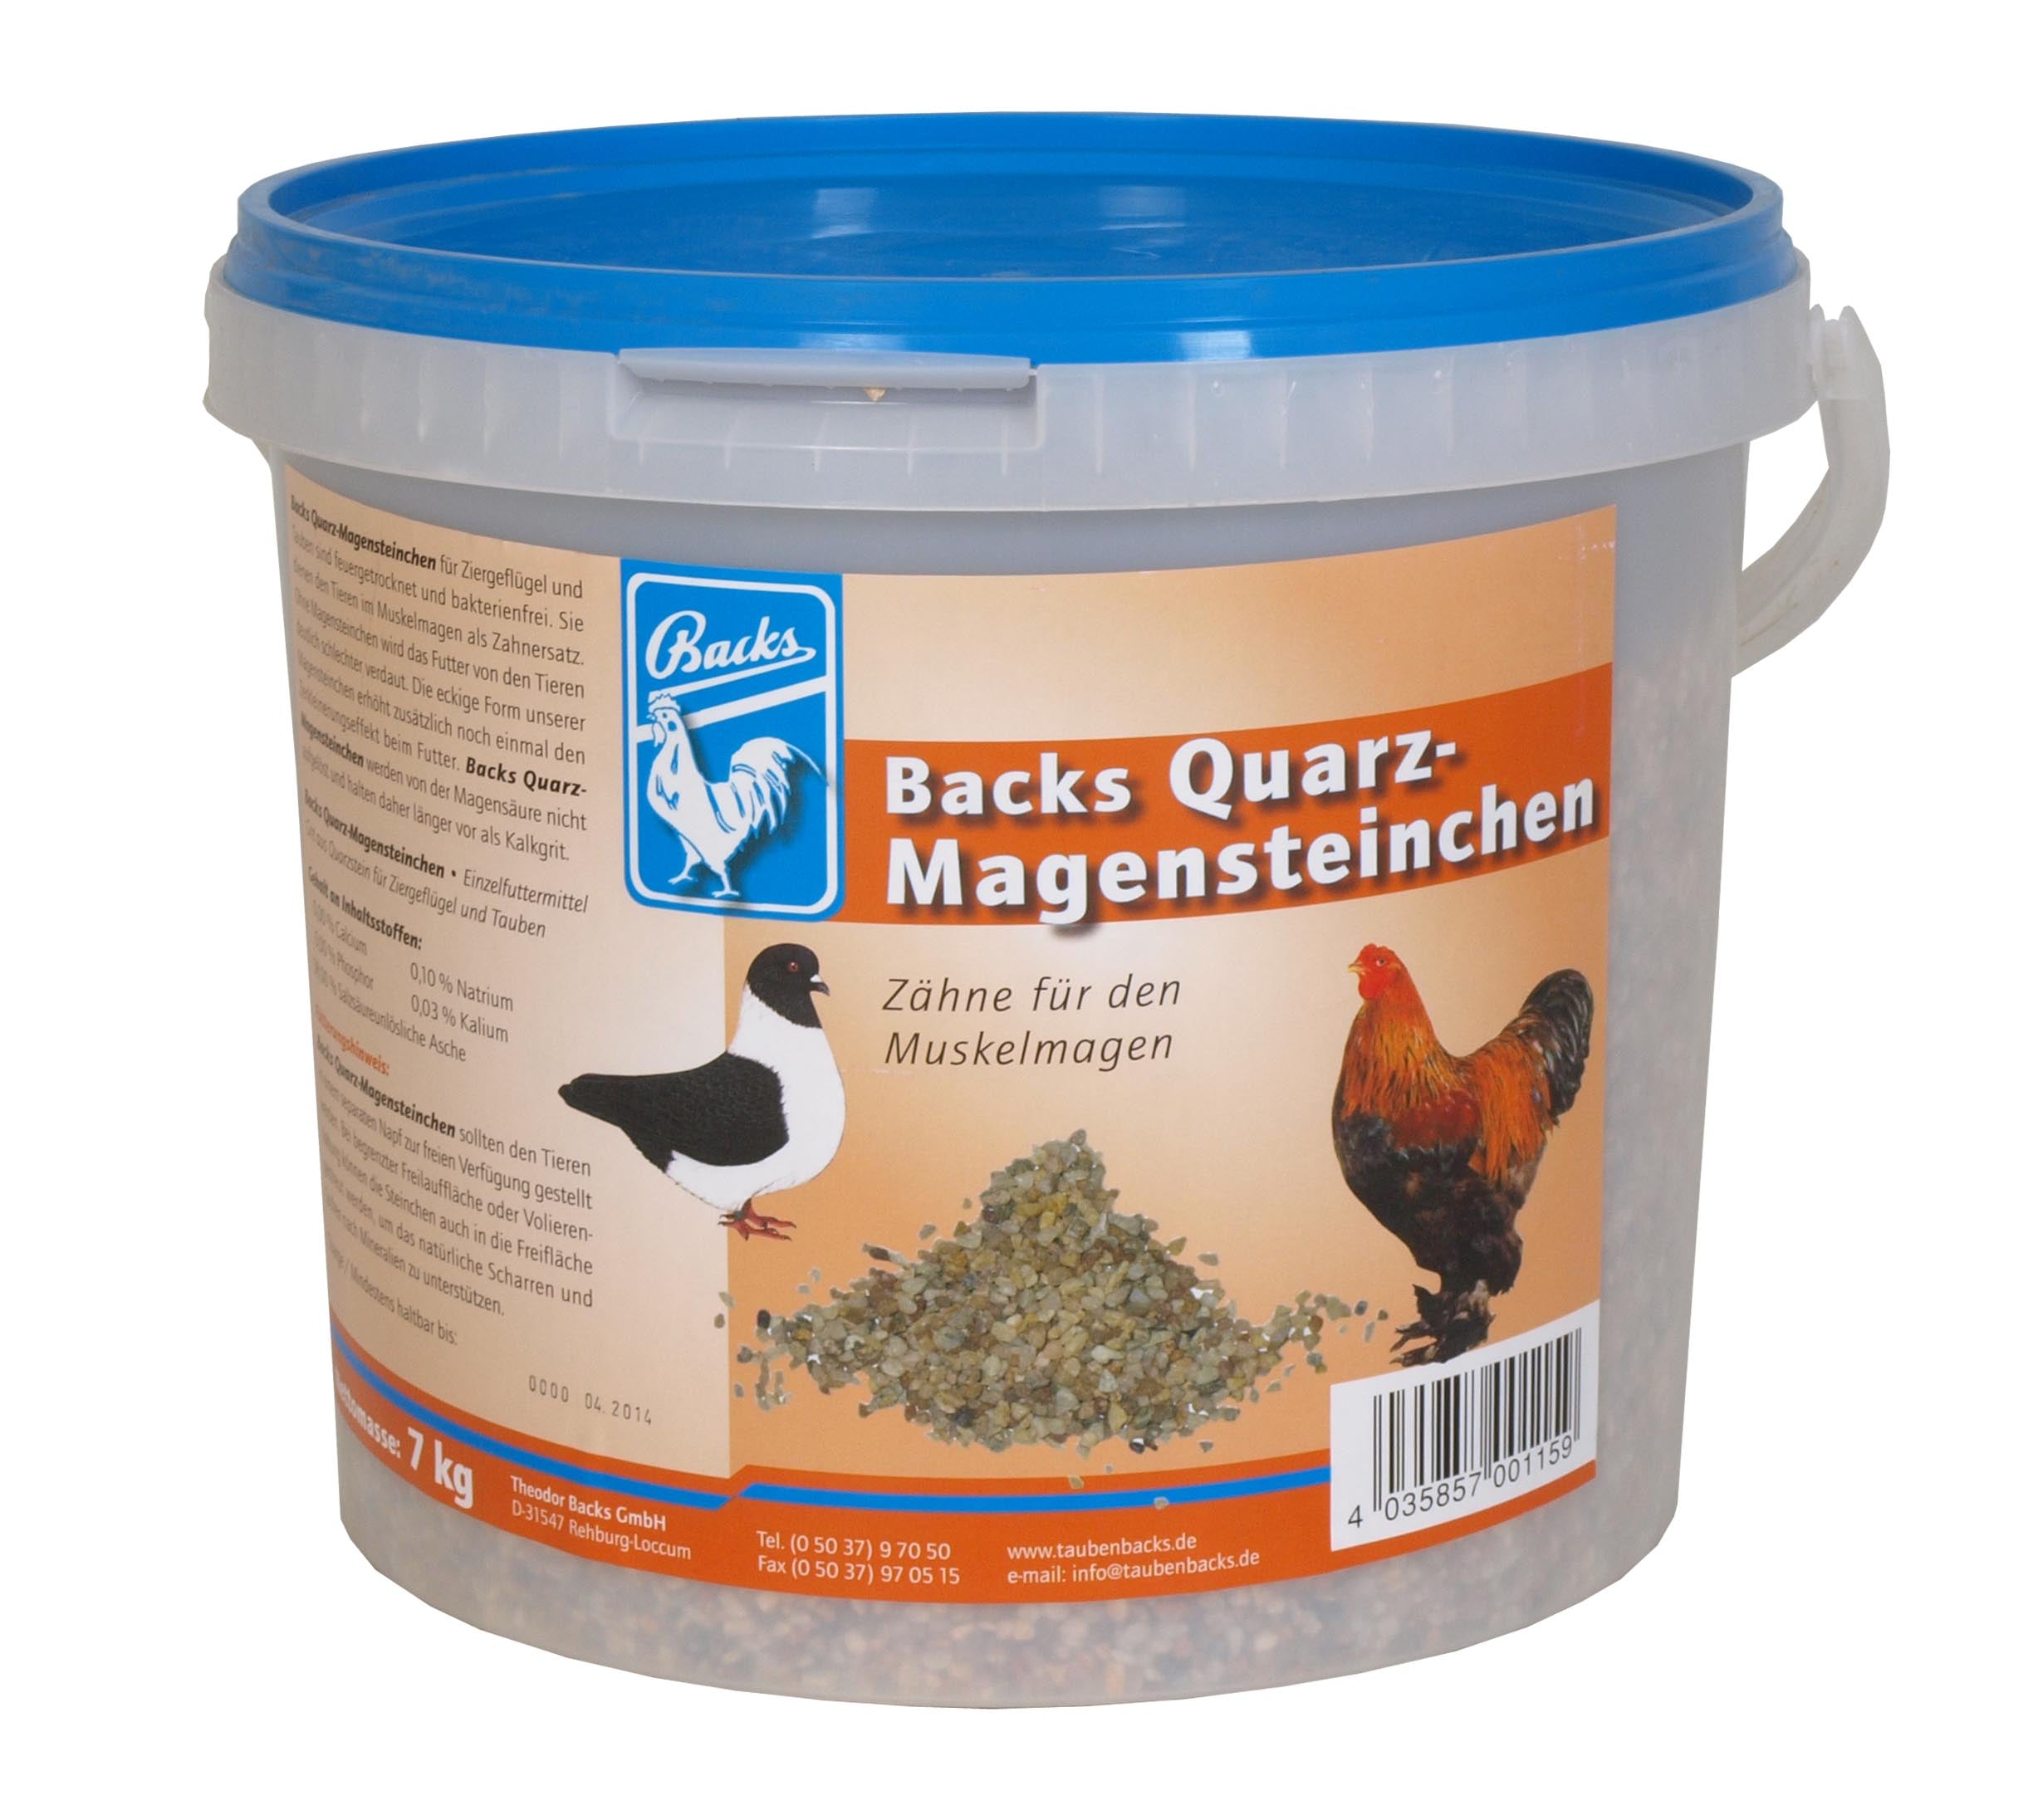 Backs Quarz-Magensteinchen (7kg)